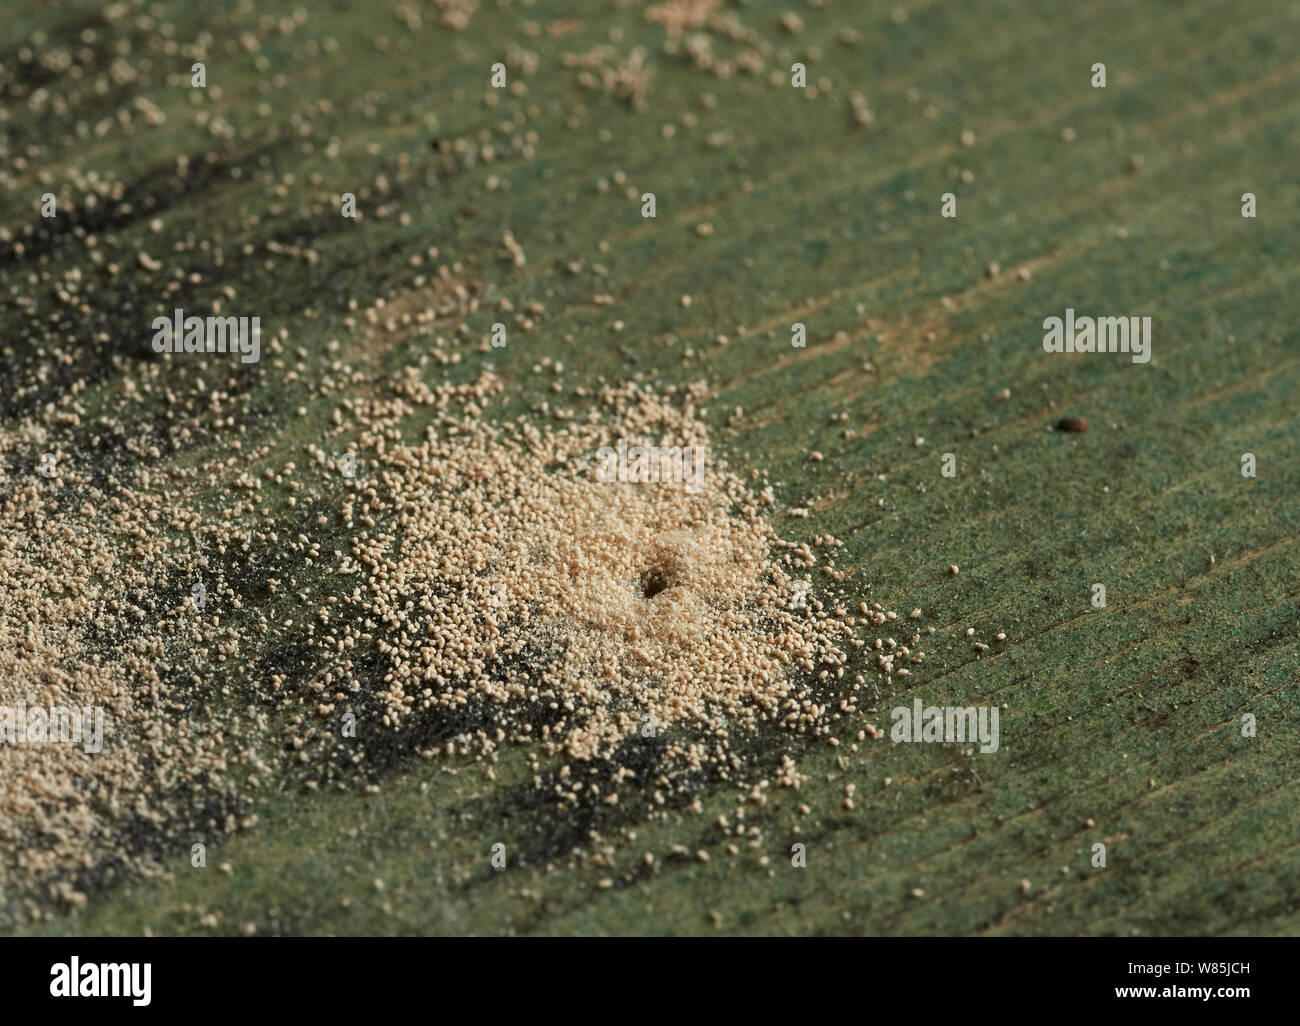 Woodworm Golf Polo ou le mobilier asiatique (Anobium punctatum) trous avec la poussière ou la poudre produite par la larve. Angleterre, Royaume-Uni. En août. Banque D'Images